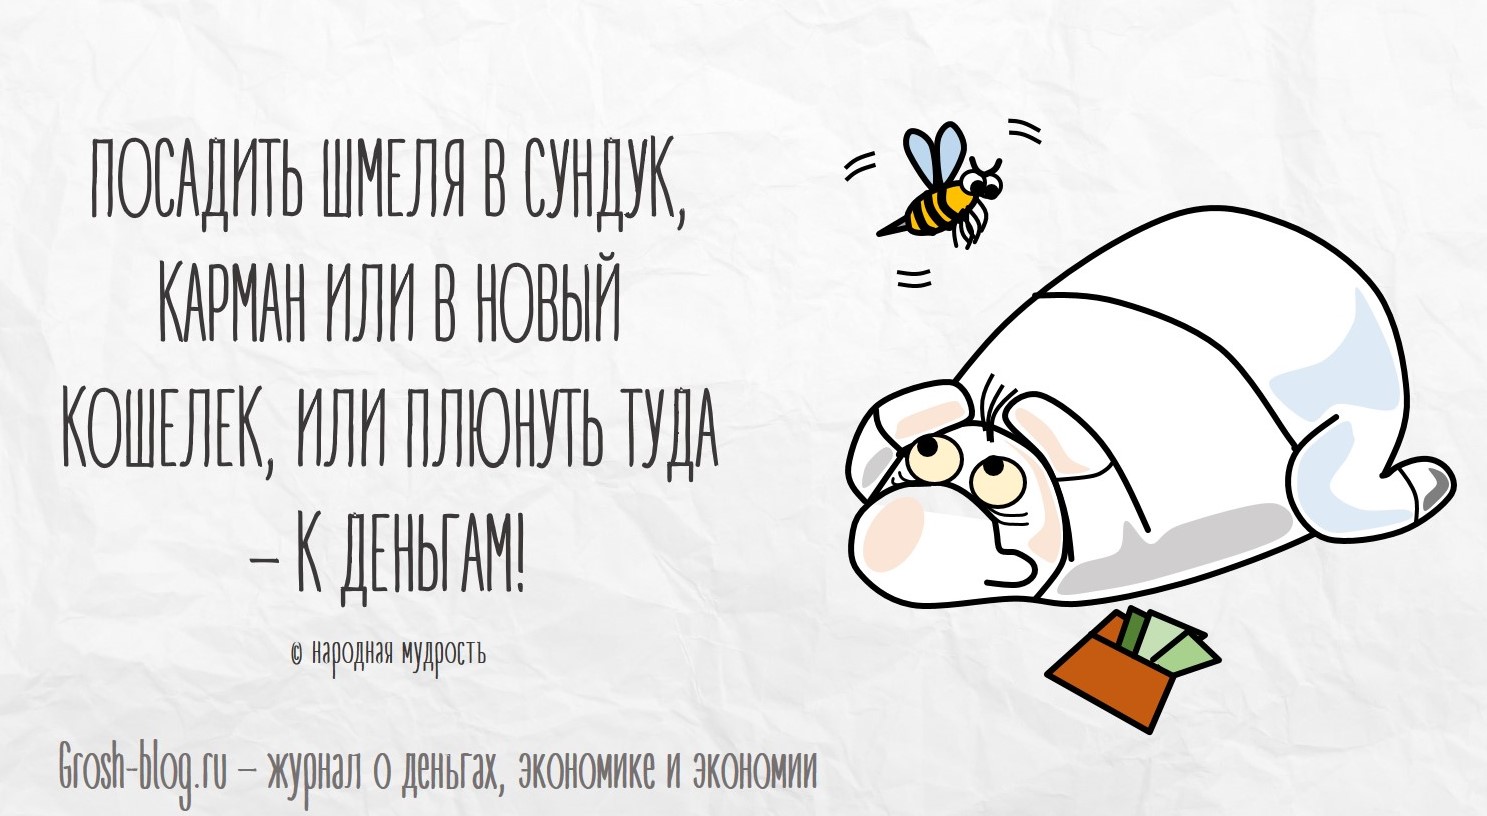 Что делать, чтобы водились деньги grosh-blog.ru - Журнал о деньгах, экономике и экономии